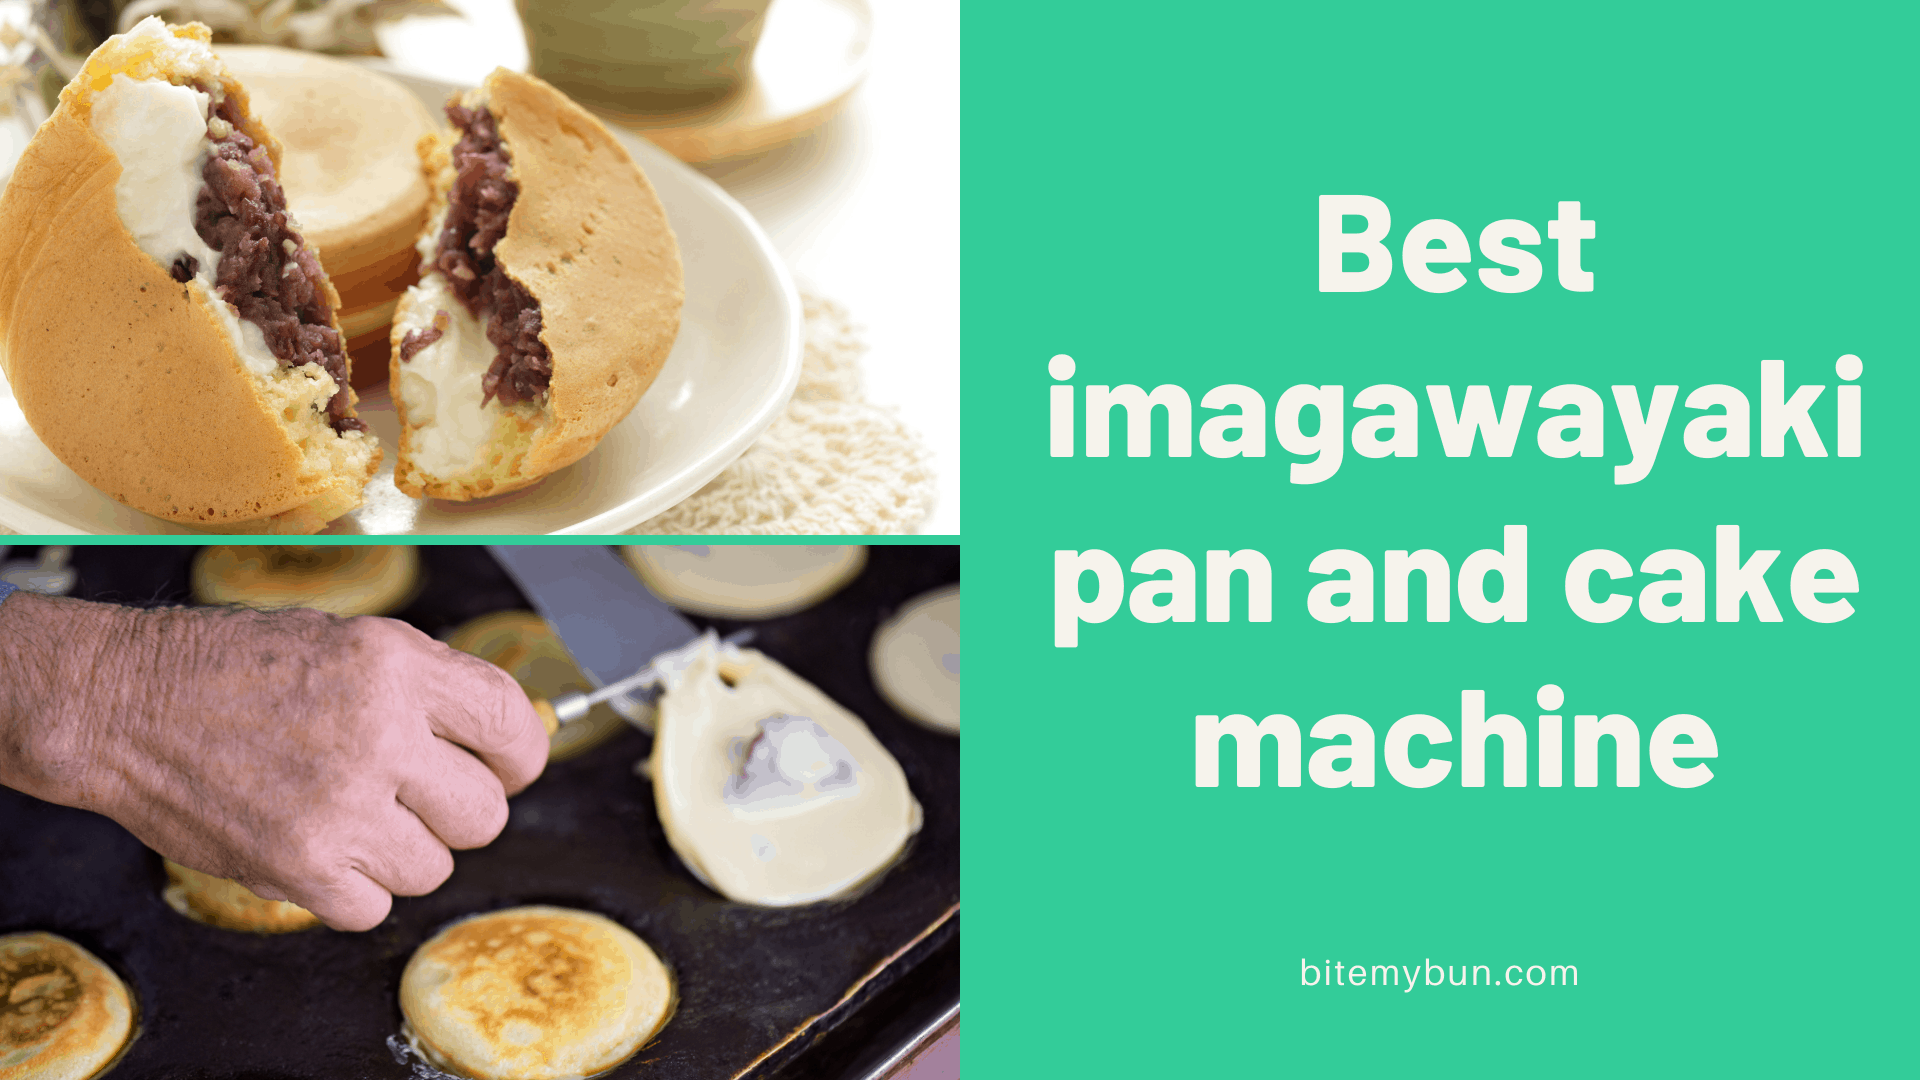 Bästa imagawayaki pan- och kakmaskin | Topp 7 alternativ granskade